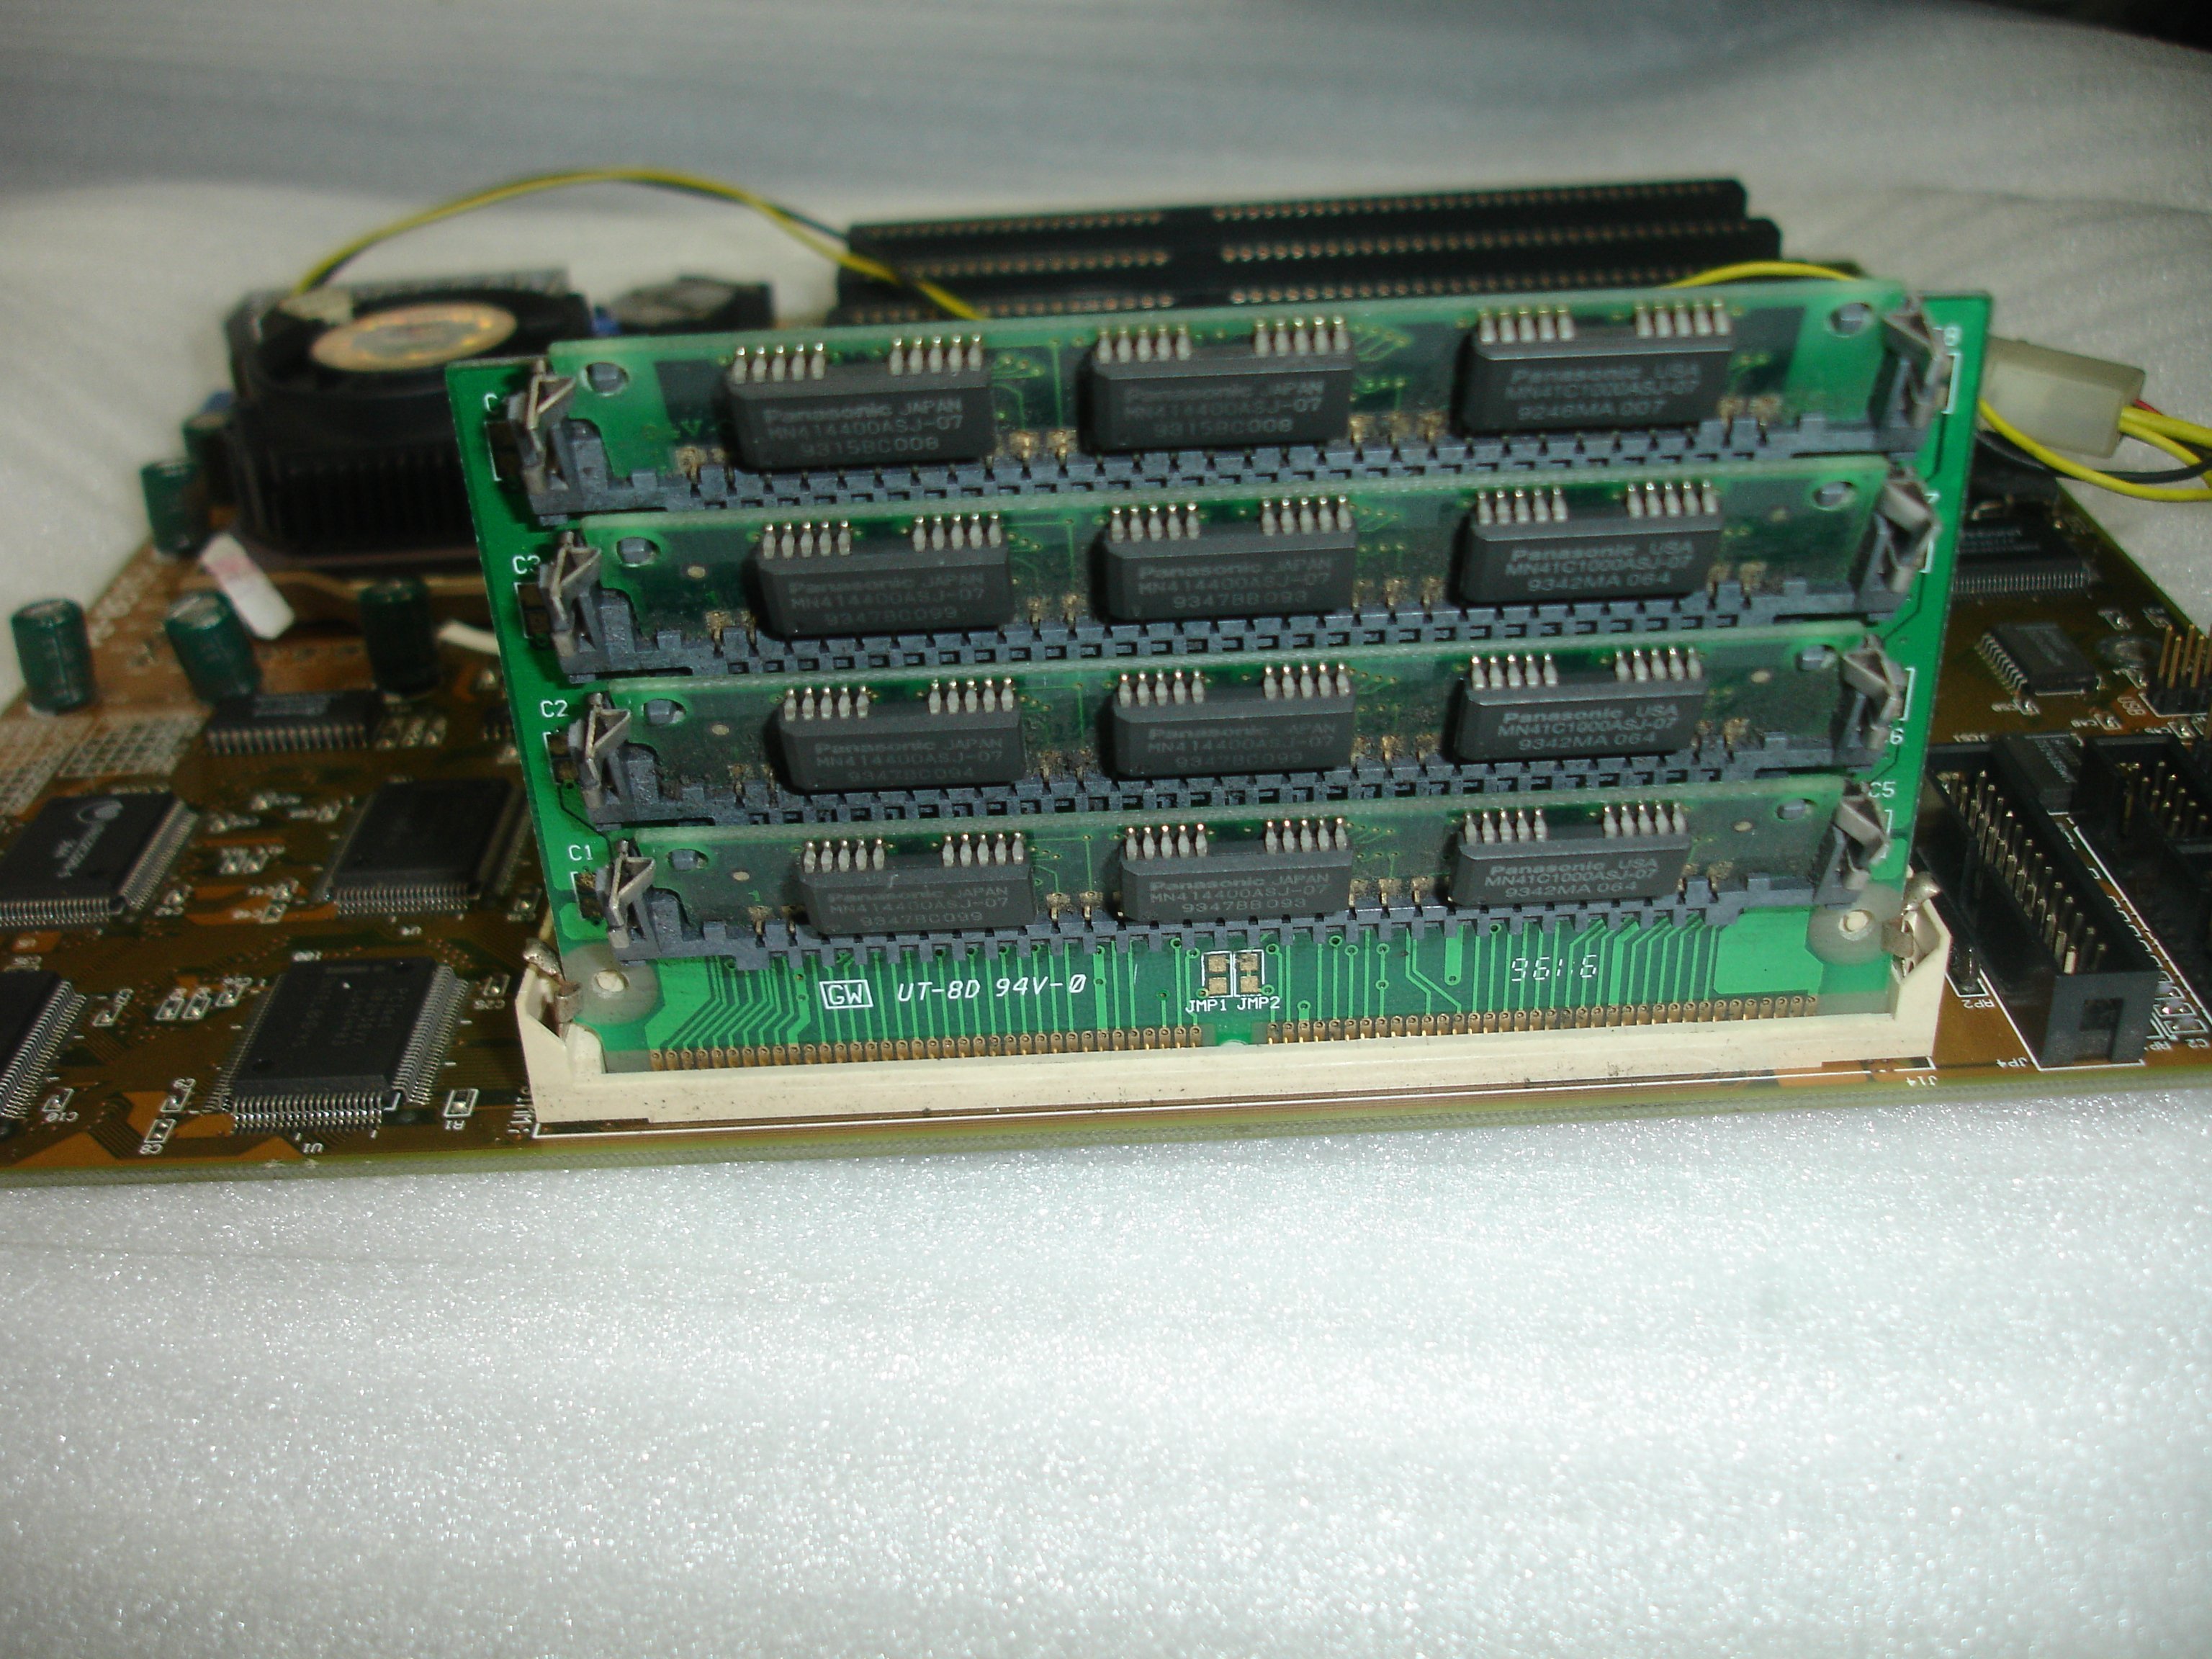 電腦零件補給站】古董級記憶體386 486主機板72pin記憶體擴充卡| Yahoo 